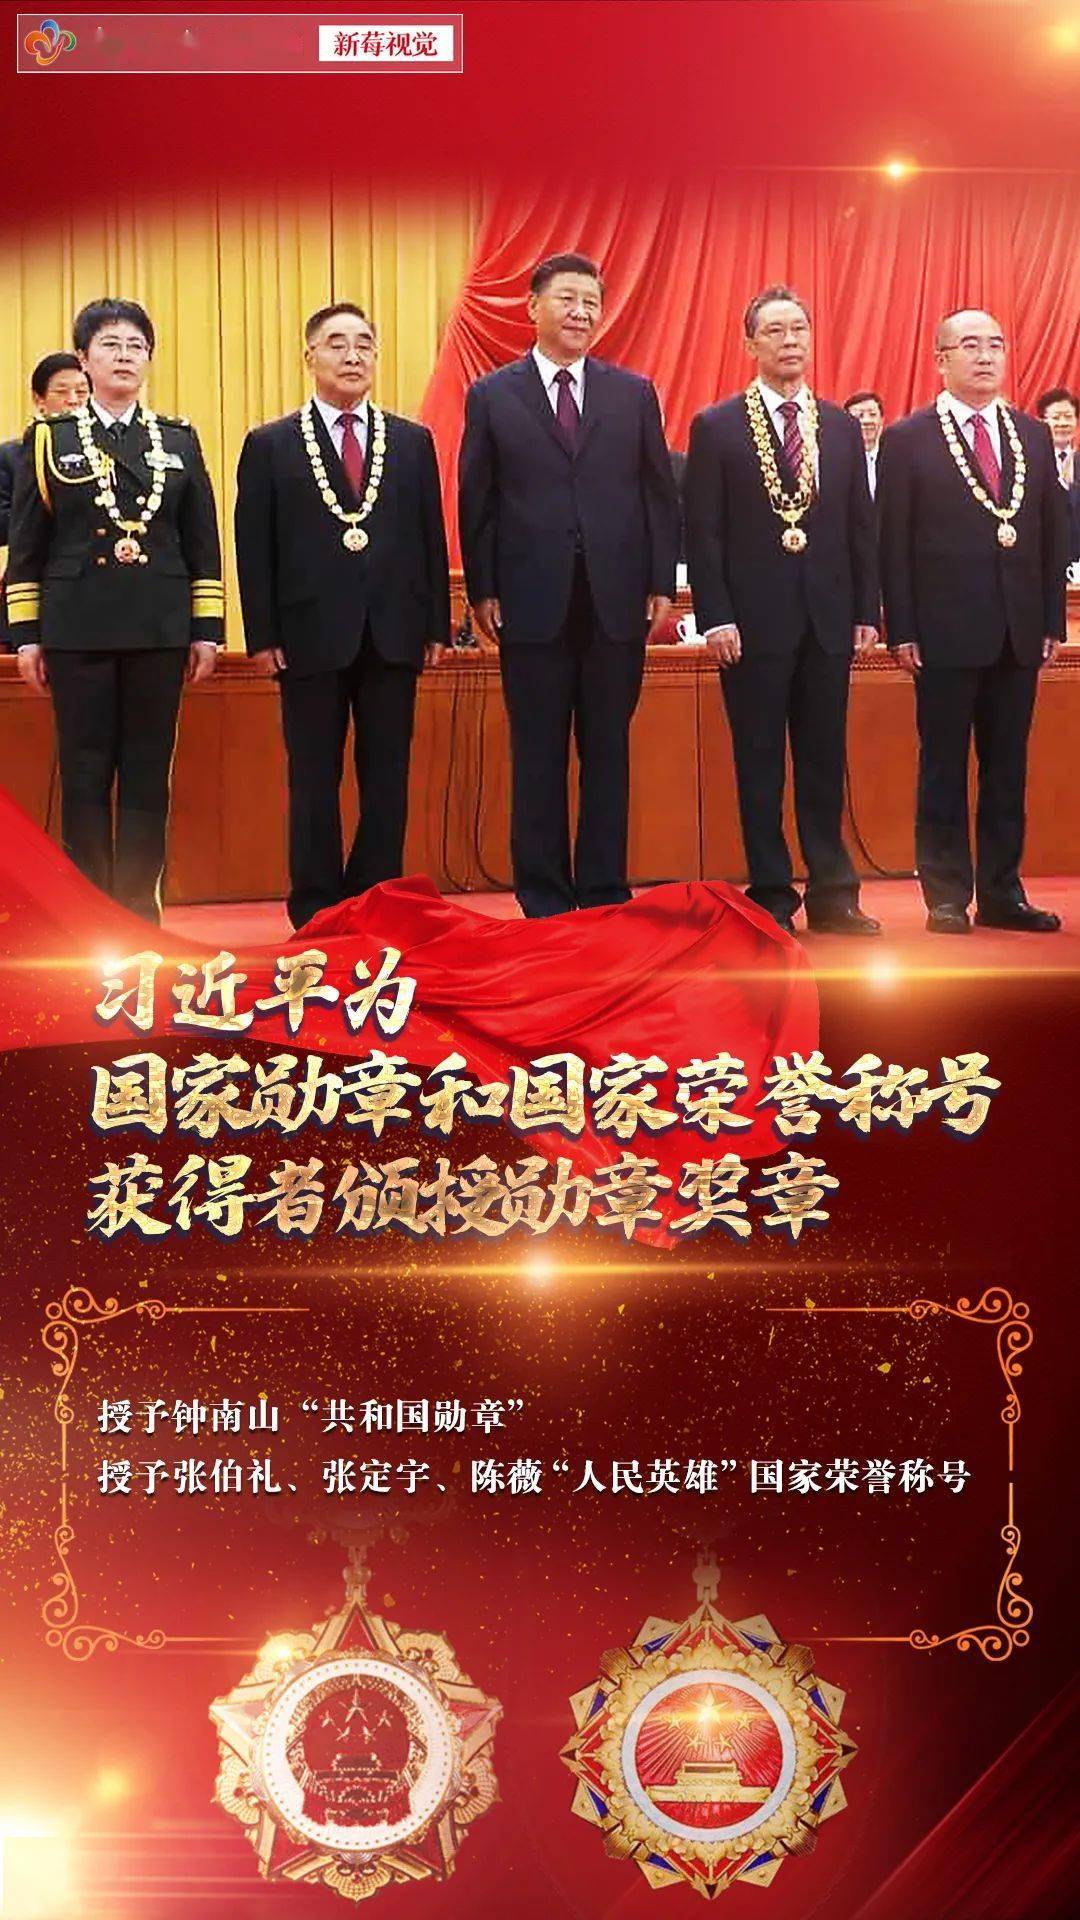 全国抗击新冠肺炎疫情表彰大会今天上午10时在北京人民大会堂隆重